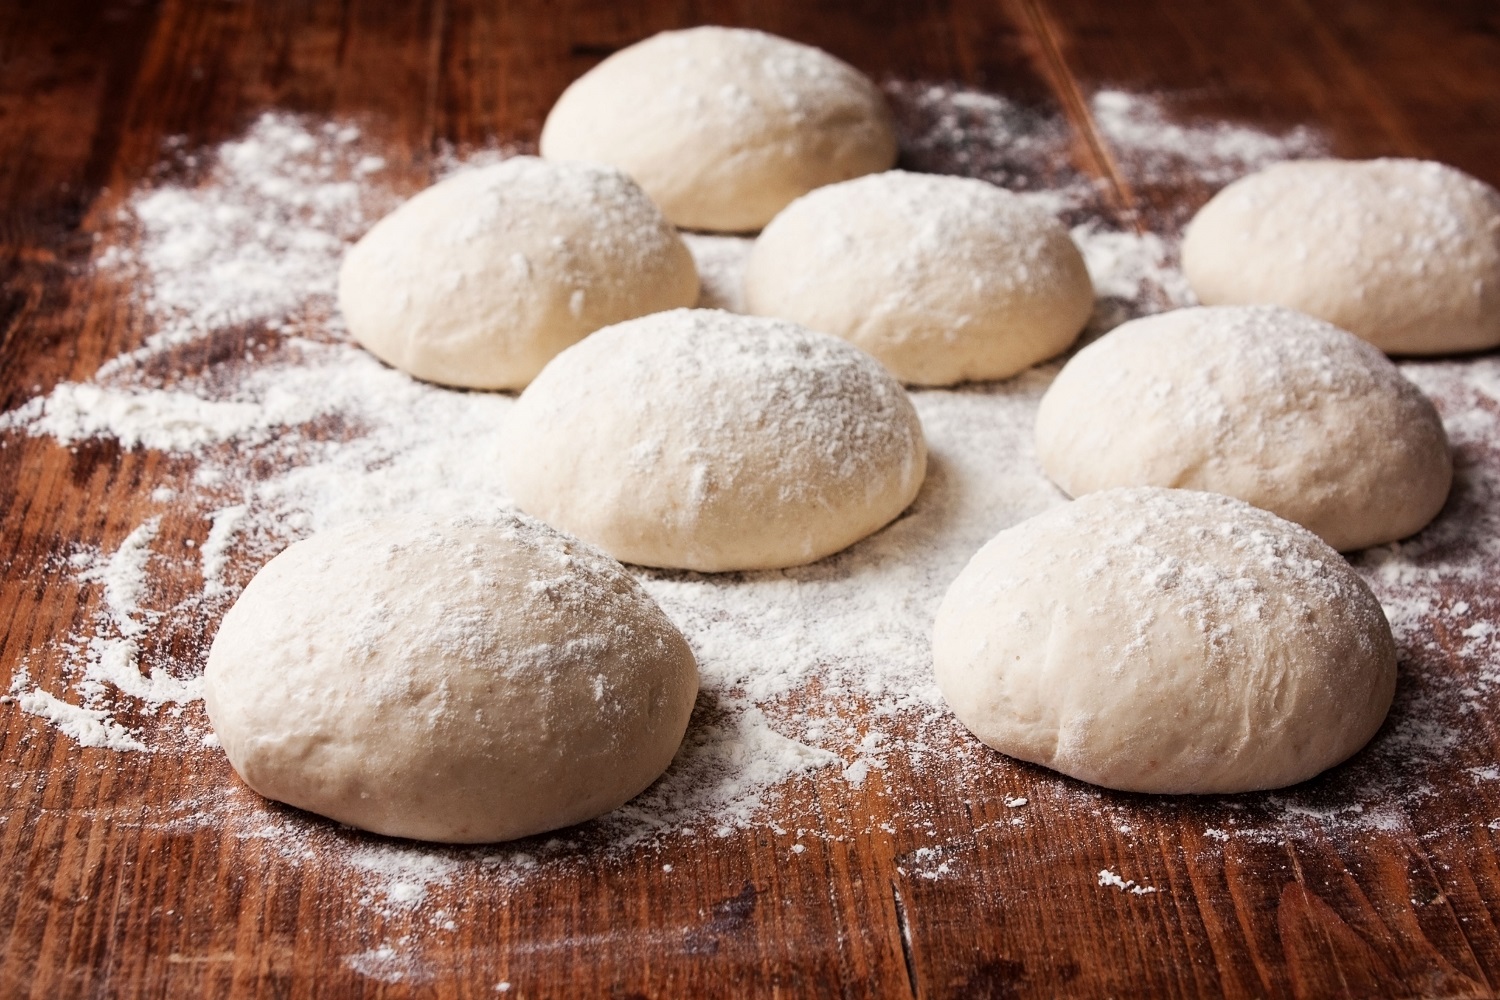 bread-dough-vs-pizza-dough2